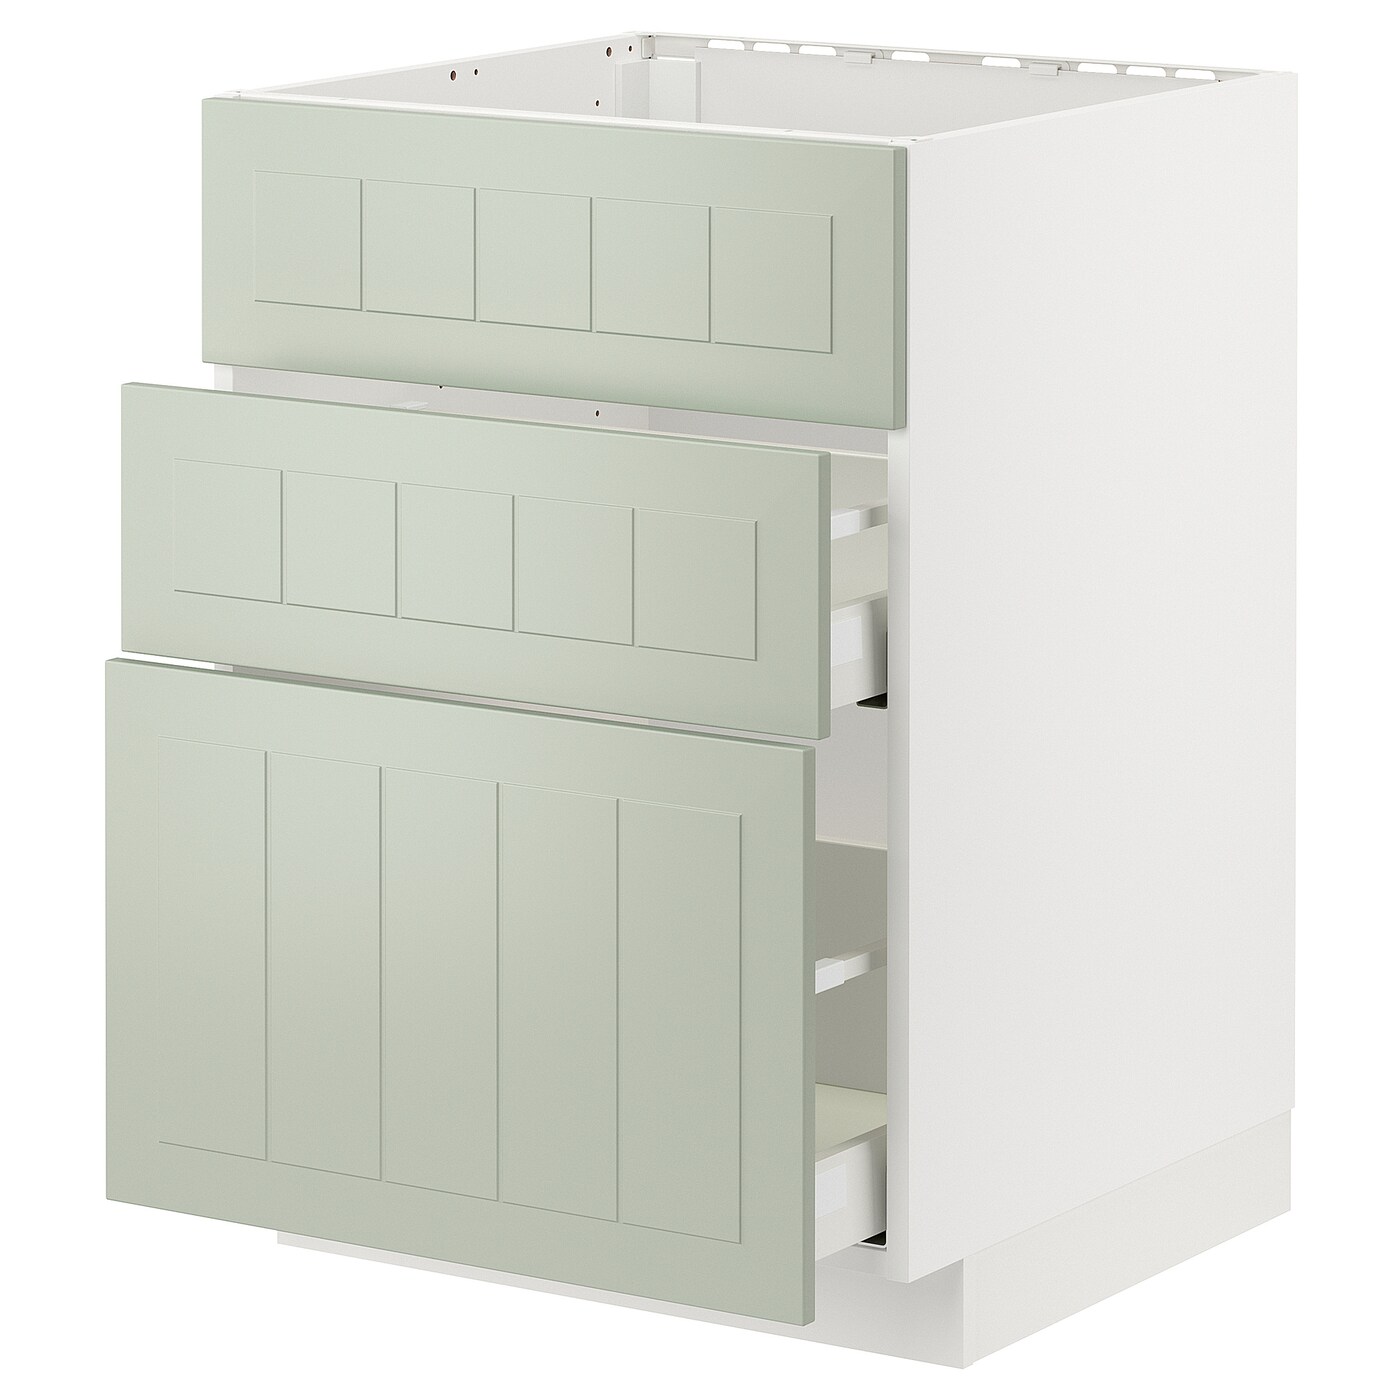 Напольный шкаф - METOD / MAXIMERA IKEA/ МЕТОД/ МАКСИМЕРА ИКЕА,  88х60 см, белый/светло-зеленый